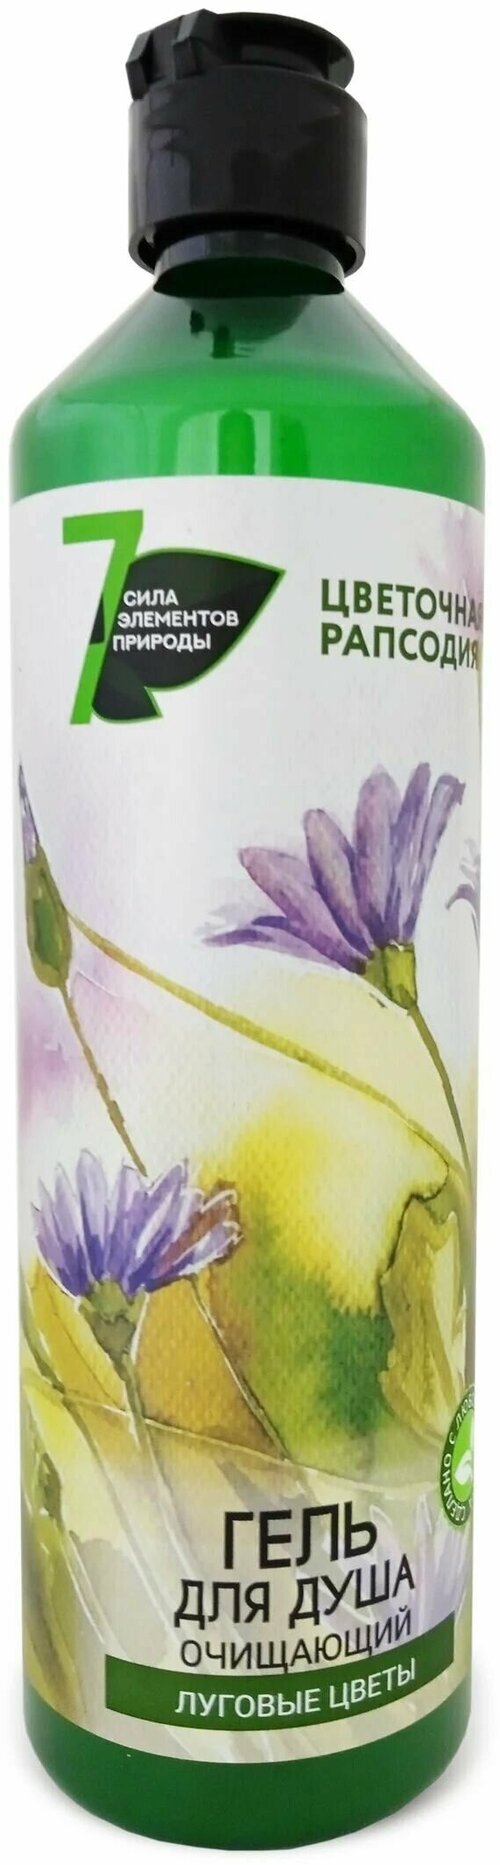 SANATA Гель для душа Цветочная Рапсодия очищающий Луговые цветы, 500 мл